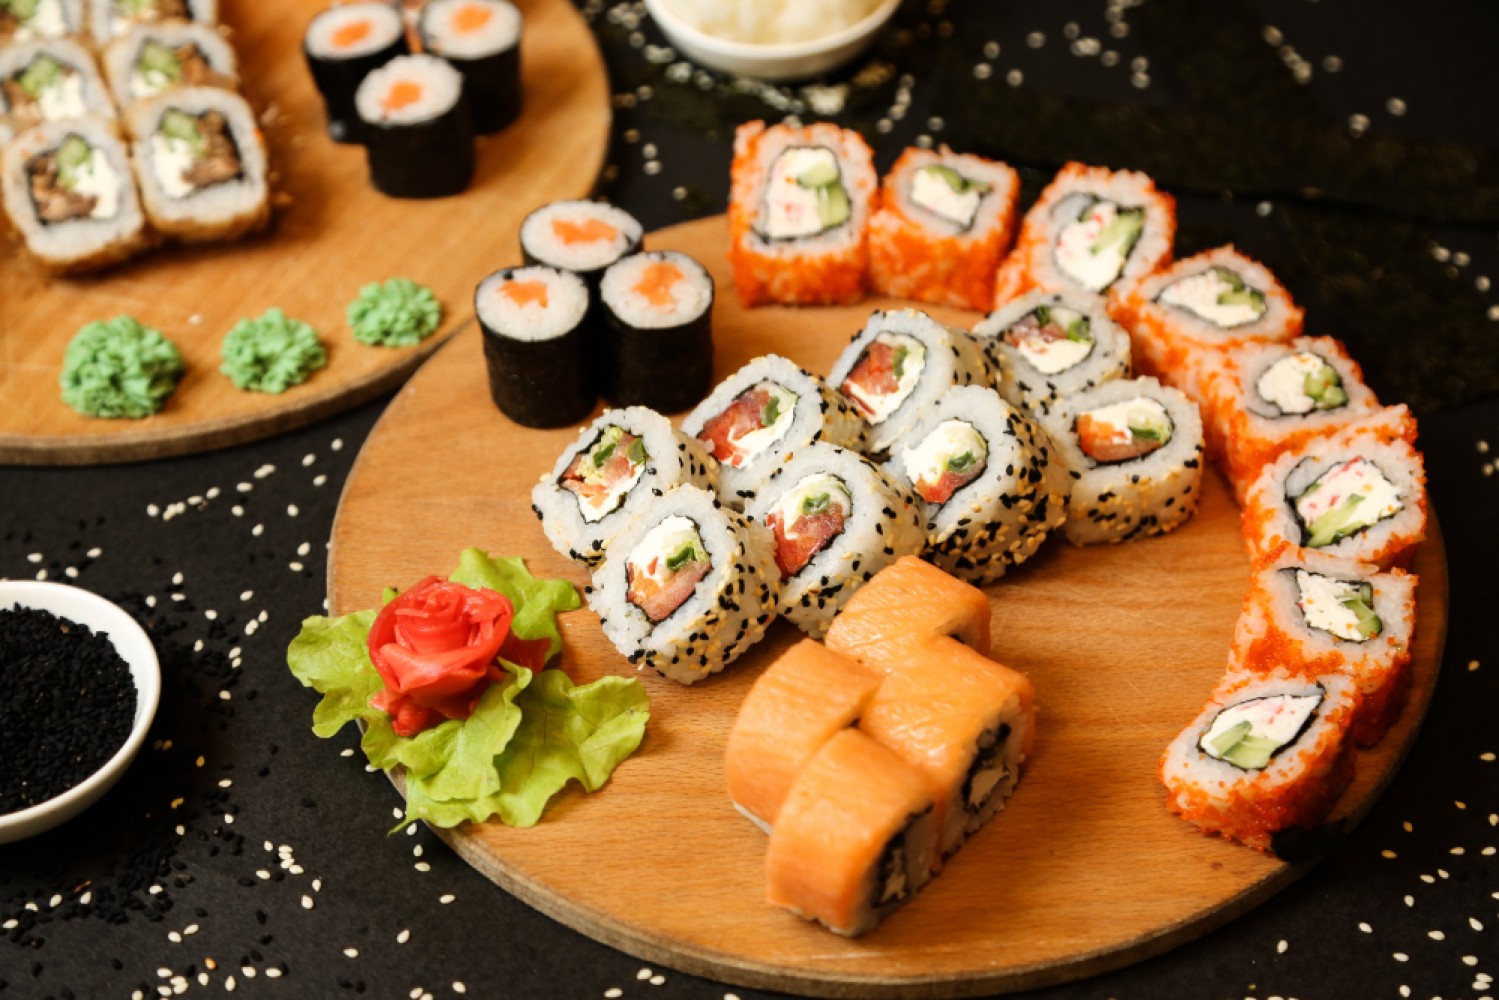 Суши давно завоевали популярность не только в Японии, но и во многих странах мира, включая Россию. Это блюдо стало символом японской кухни и предметом гордости гурманов.